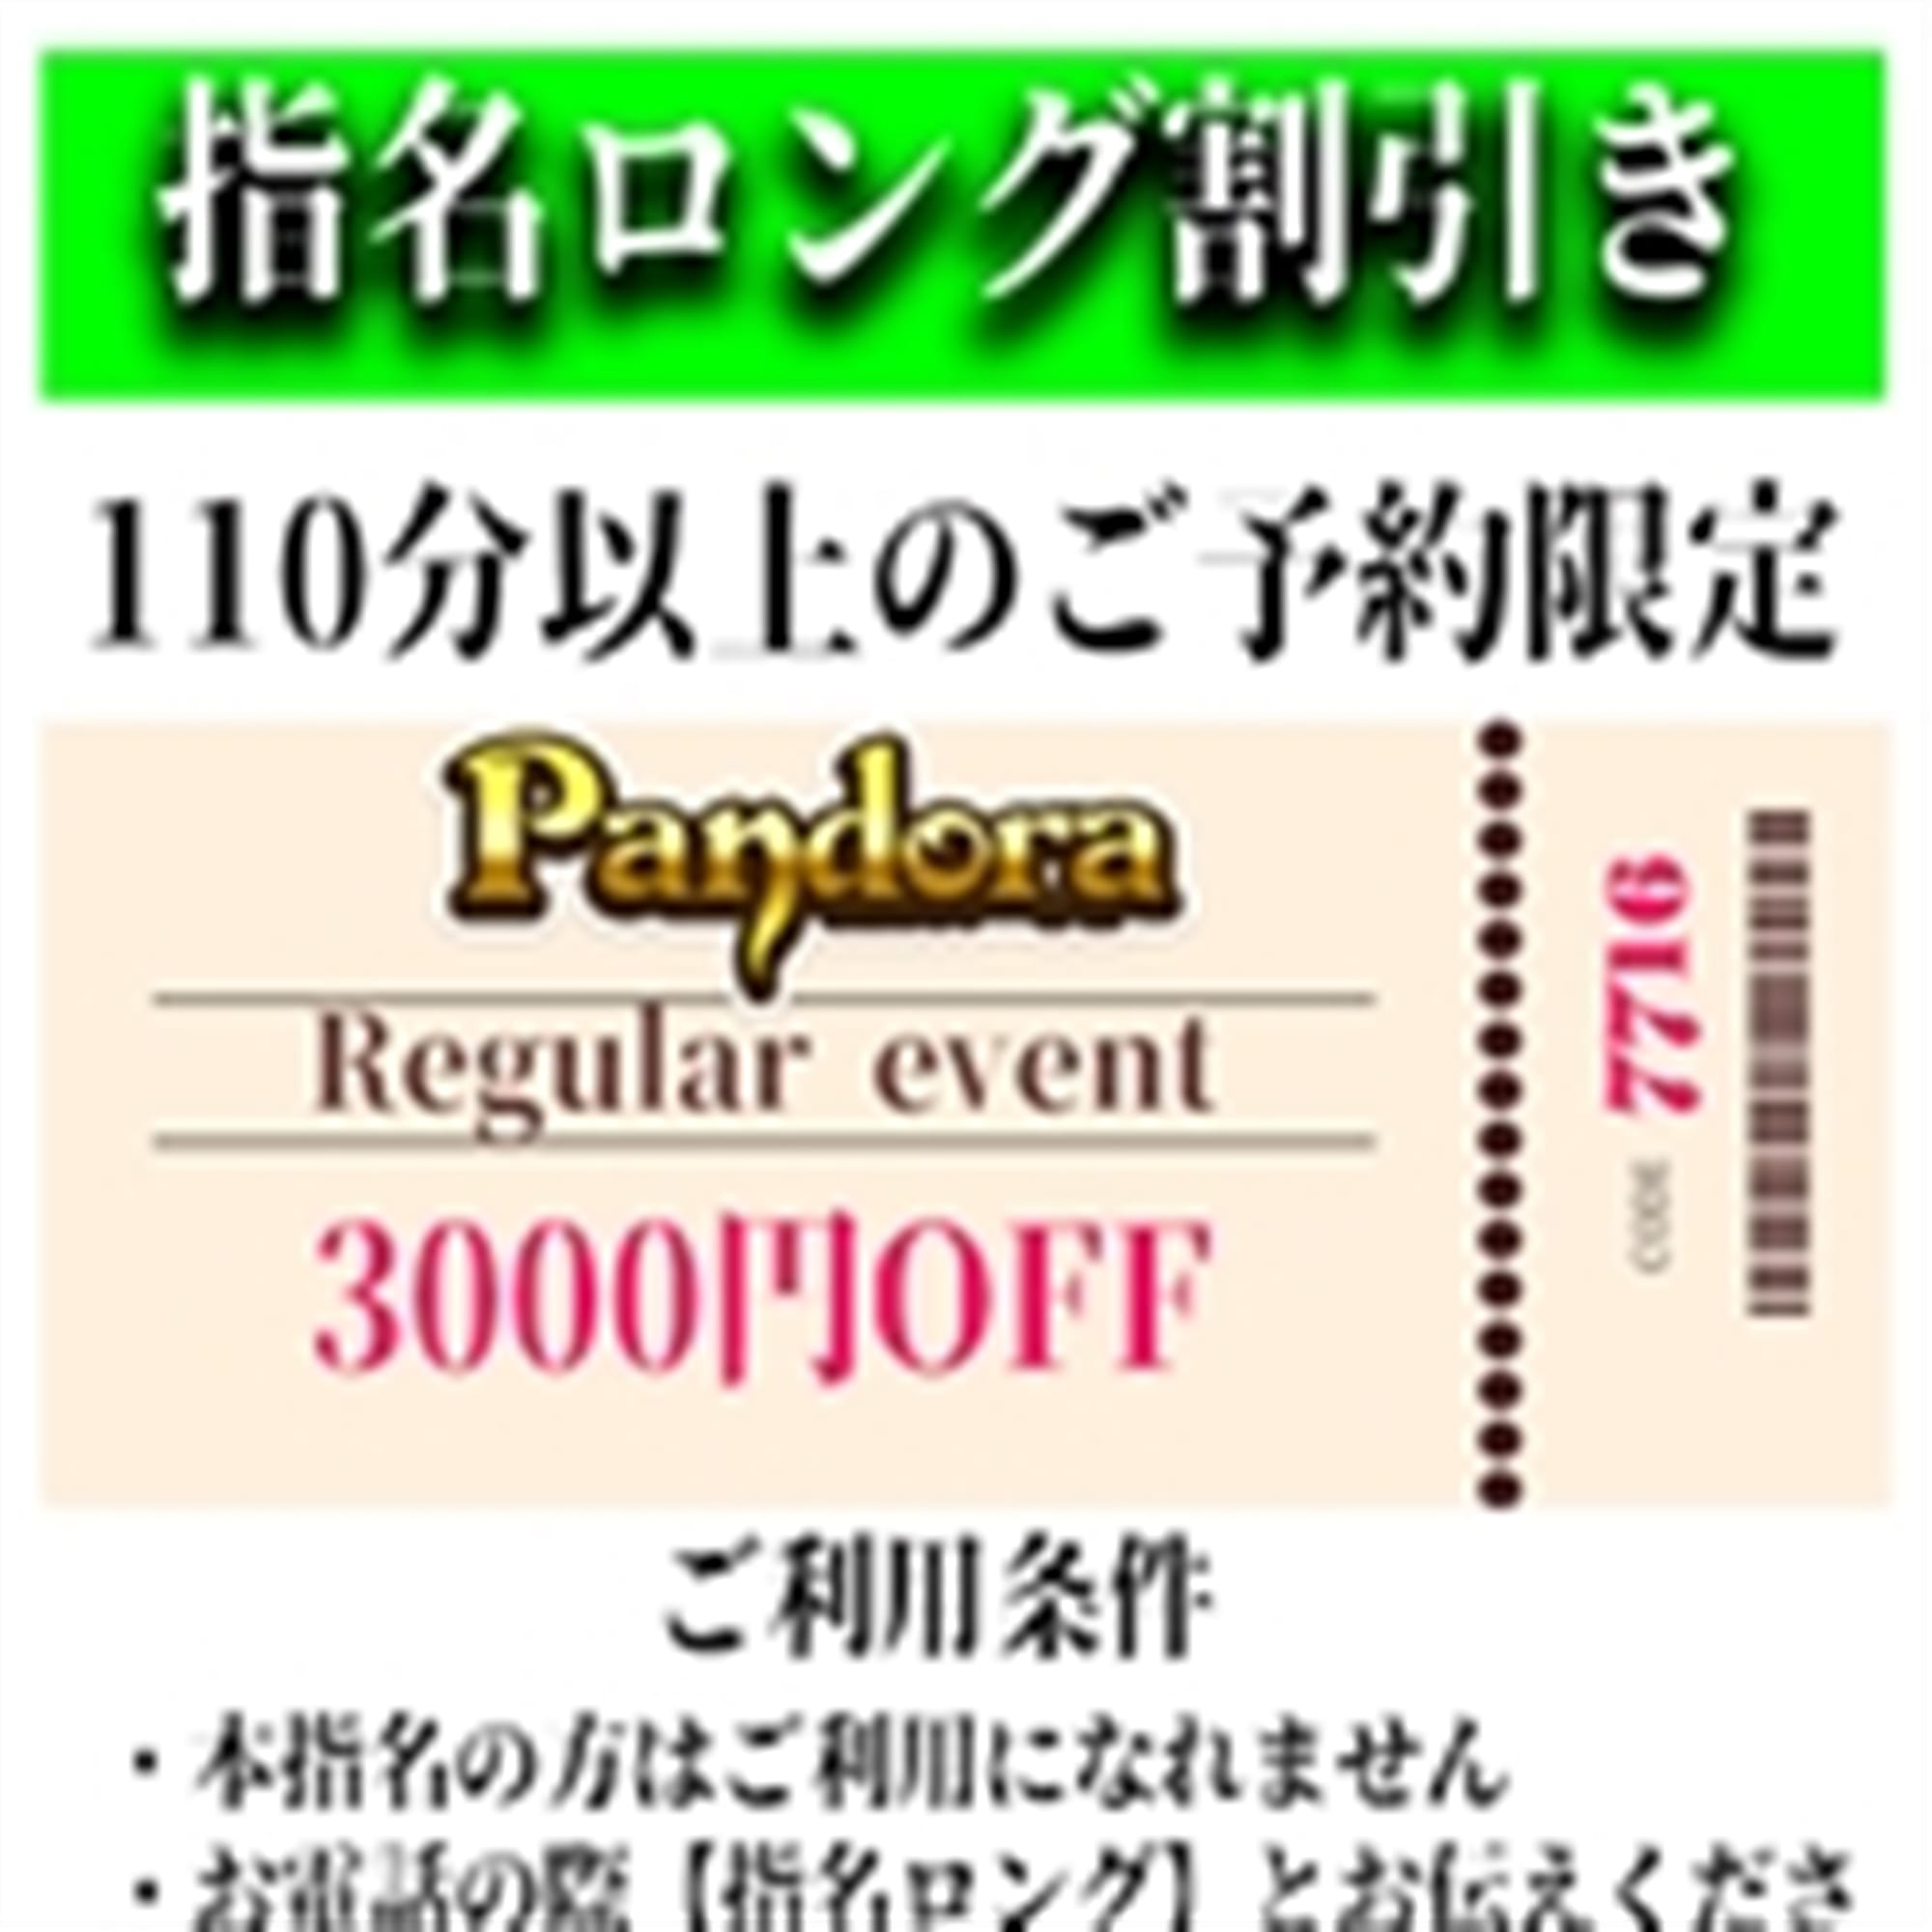 「ご指名のお客様も遊べるロングコース割引」04/23(火) 19:07 | Pandora(パンドラ)新潟のお得なニュース